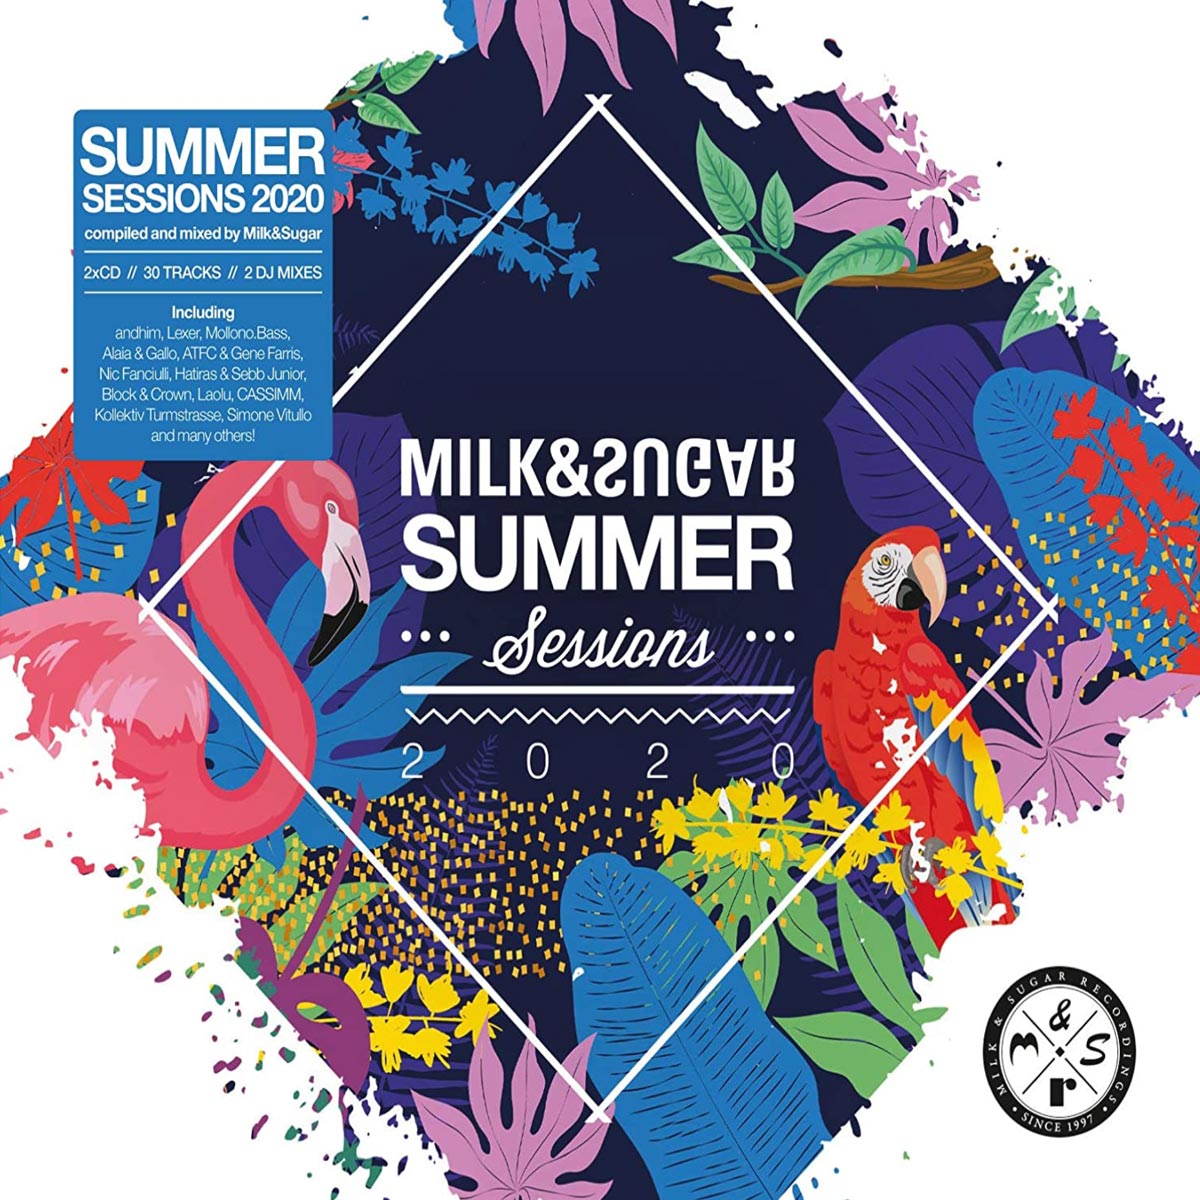 Milk & Sugar / Summer Sessions 2020